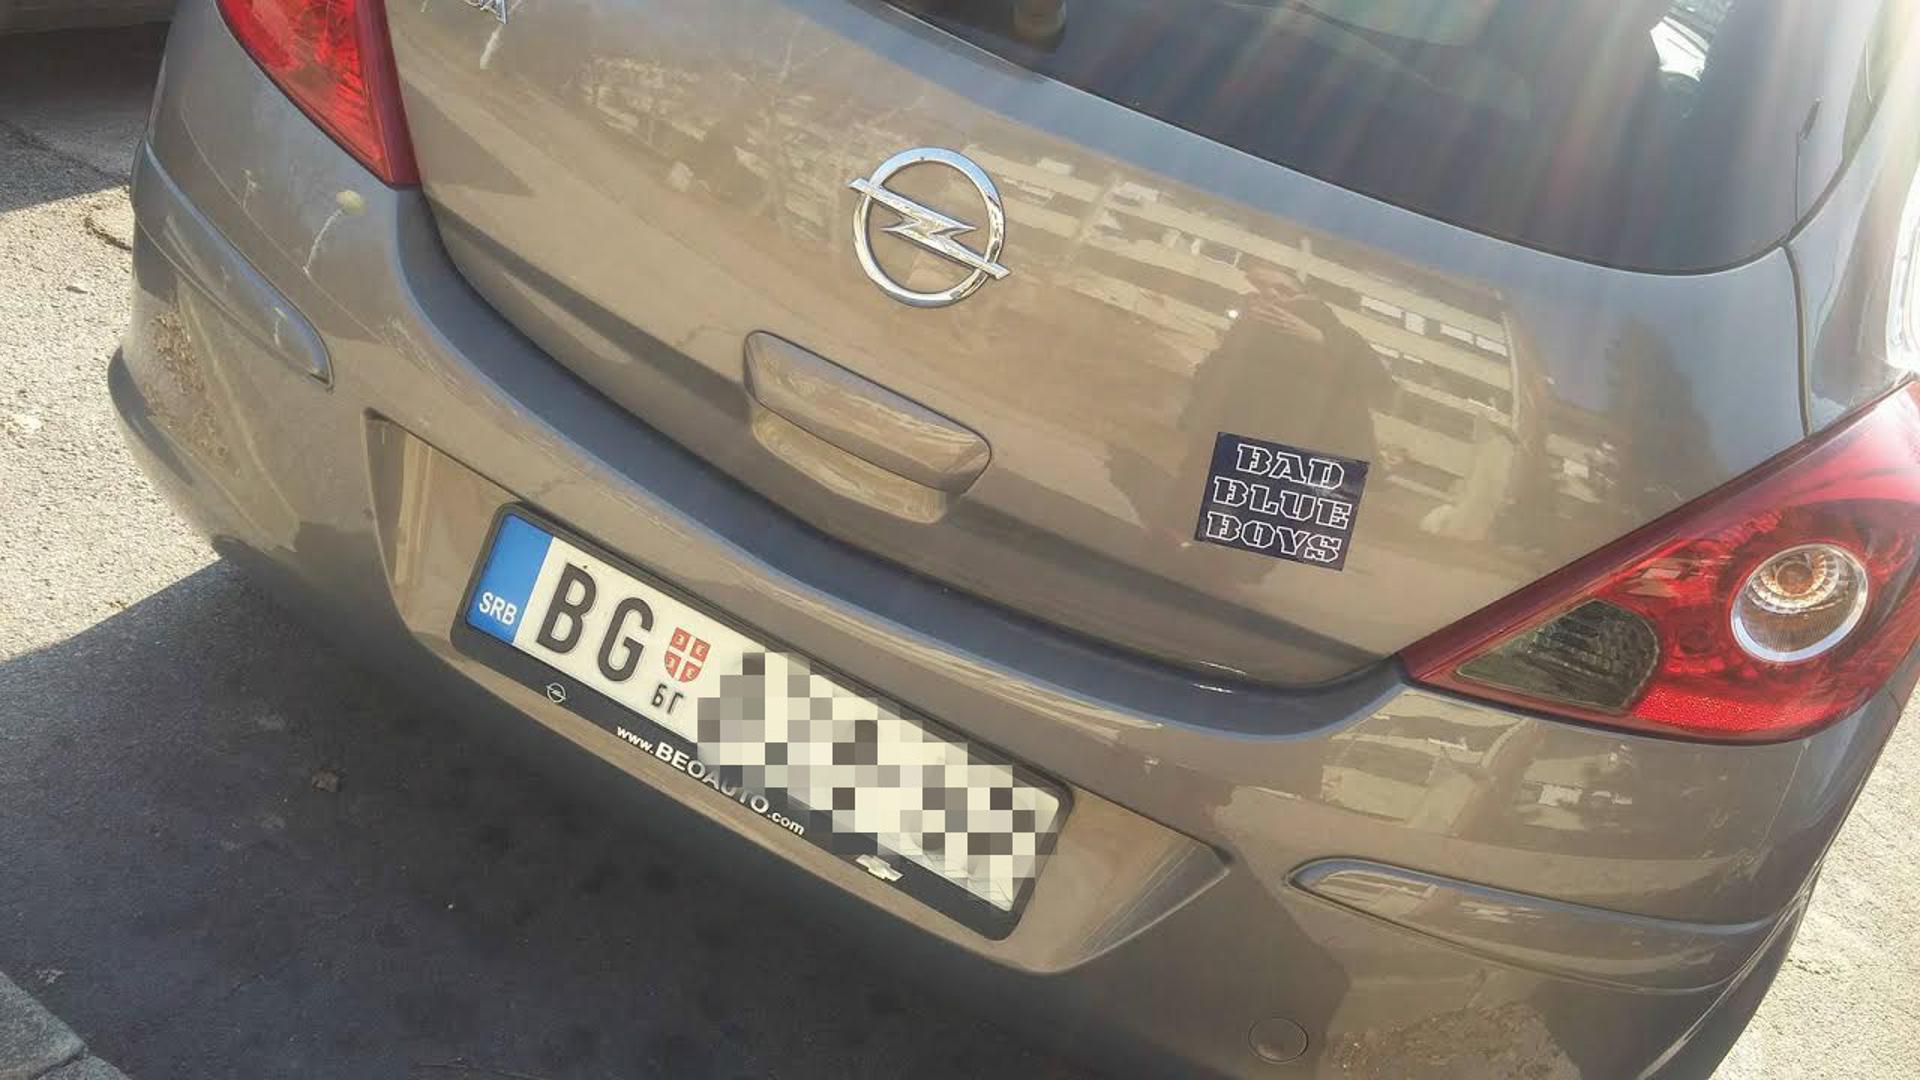 Jedan Beograđanin u Zagrebu, kako bi ''zaštitio'' svoj automobil, smislio je savršenu taktiku. Iako ima beogradske registarske oznake, njegov automobil krasila je naljepnica Bad Blue Boysa.